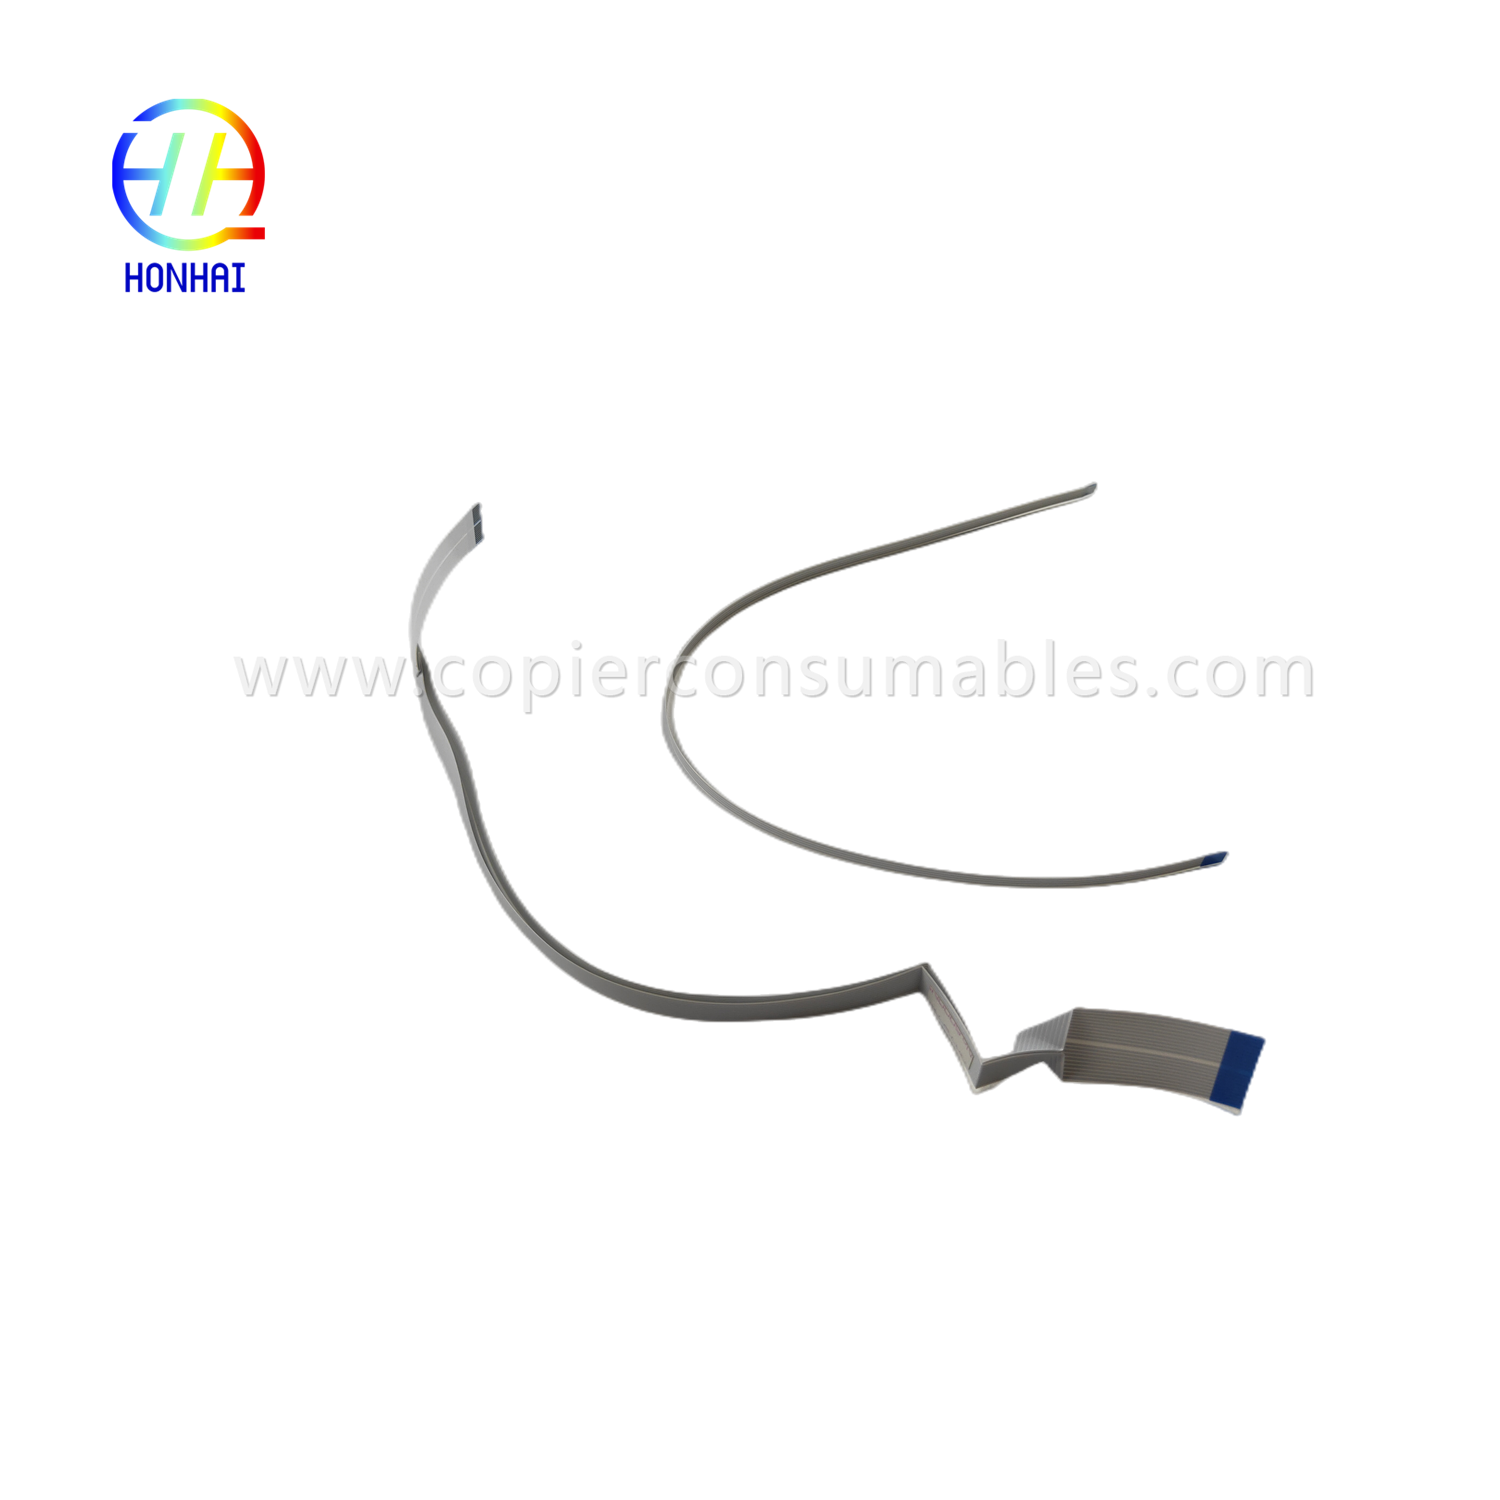 https://c585.goodao.net/flex-cable-for-epson-l1110-l3110-l3210-l3150-l3250-l5190-l5290-head-cable-product/